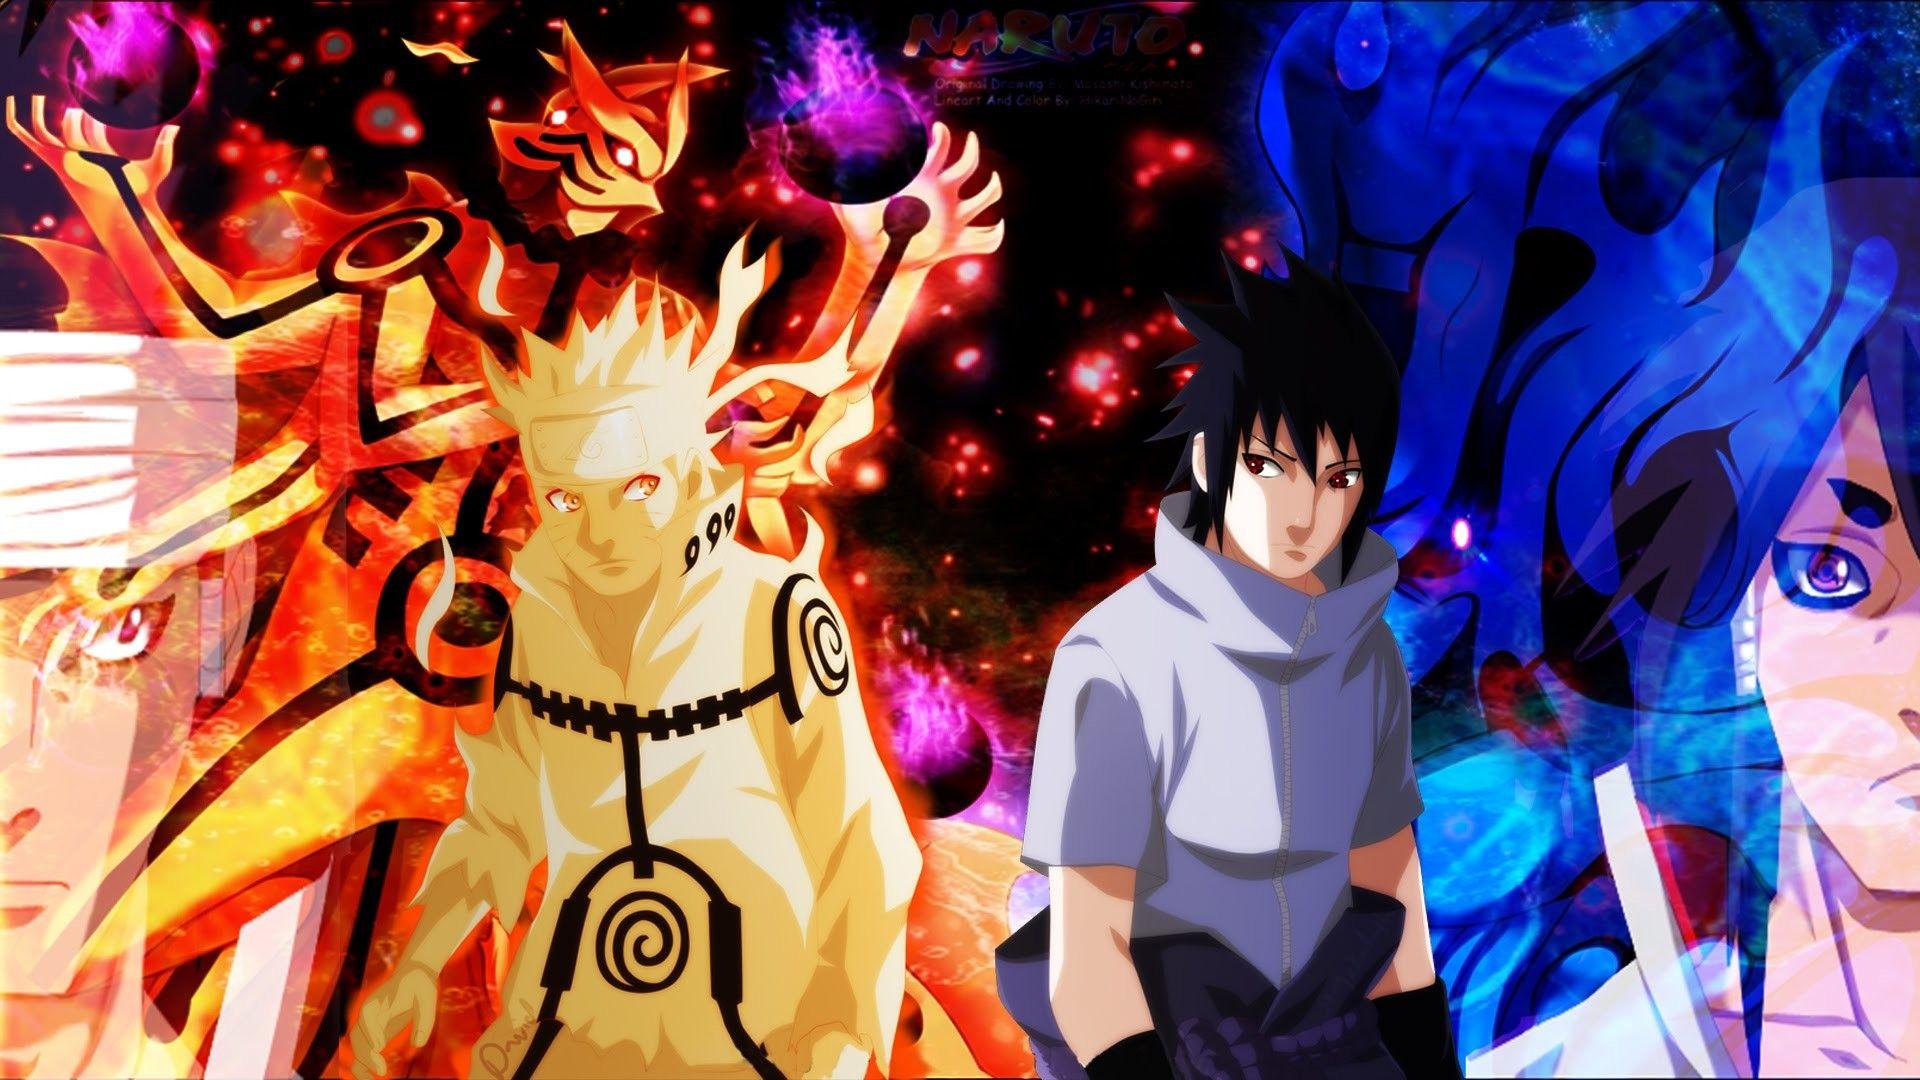 Naruto Vs Sasuke Wallpapers Top Free Naruto Vs Sasuke